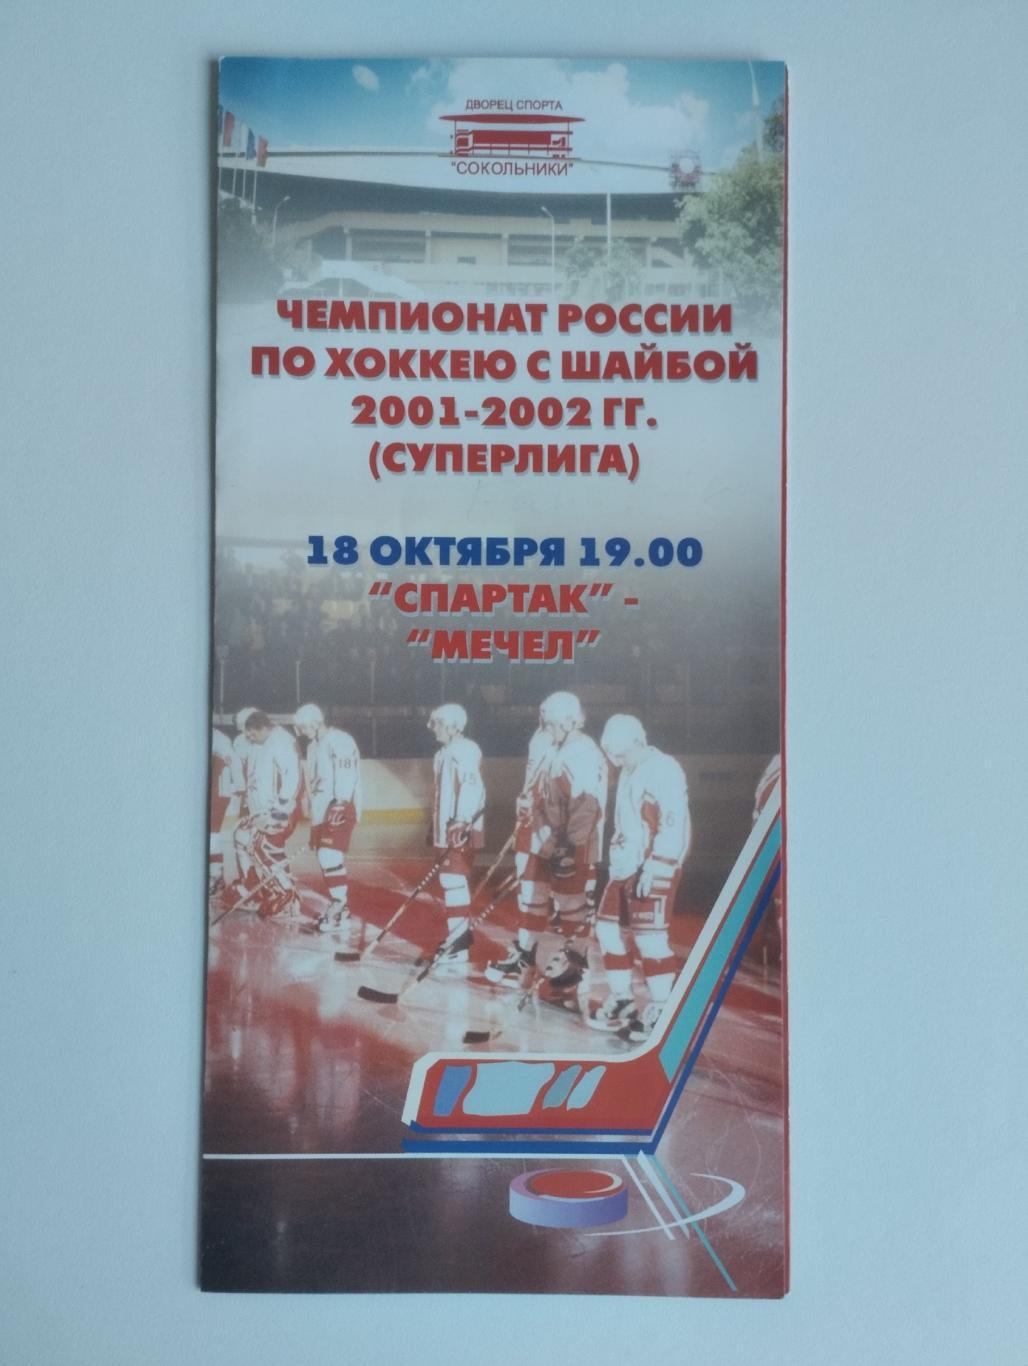 Спартак Москва - Мечел Челябинск - 18 октября 2001